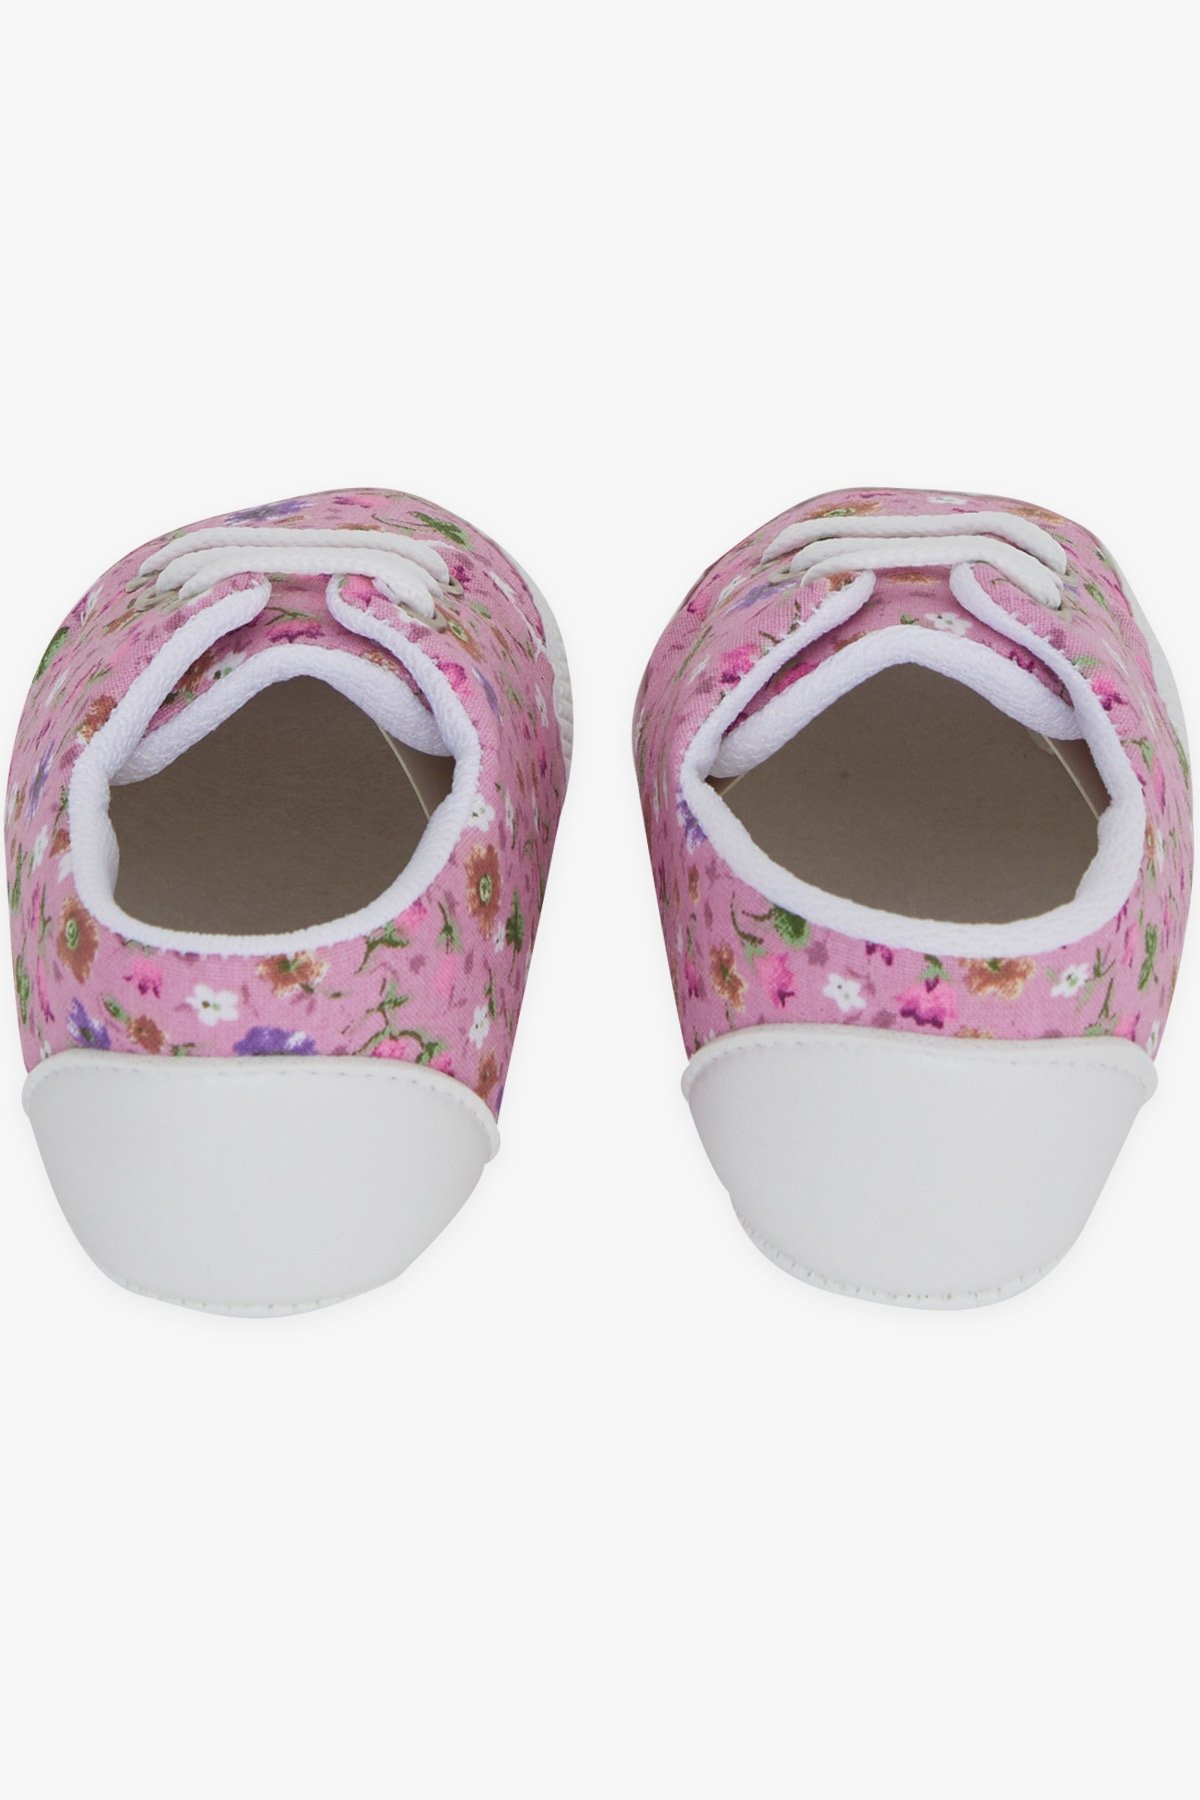 Kız Bebek Patik Ayakkabı Çiçek Desenli Gülkurusu 18 Numara-19 Numara -  Tatlı Bebek Ayakkabıları | Breeze